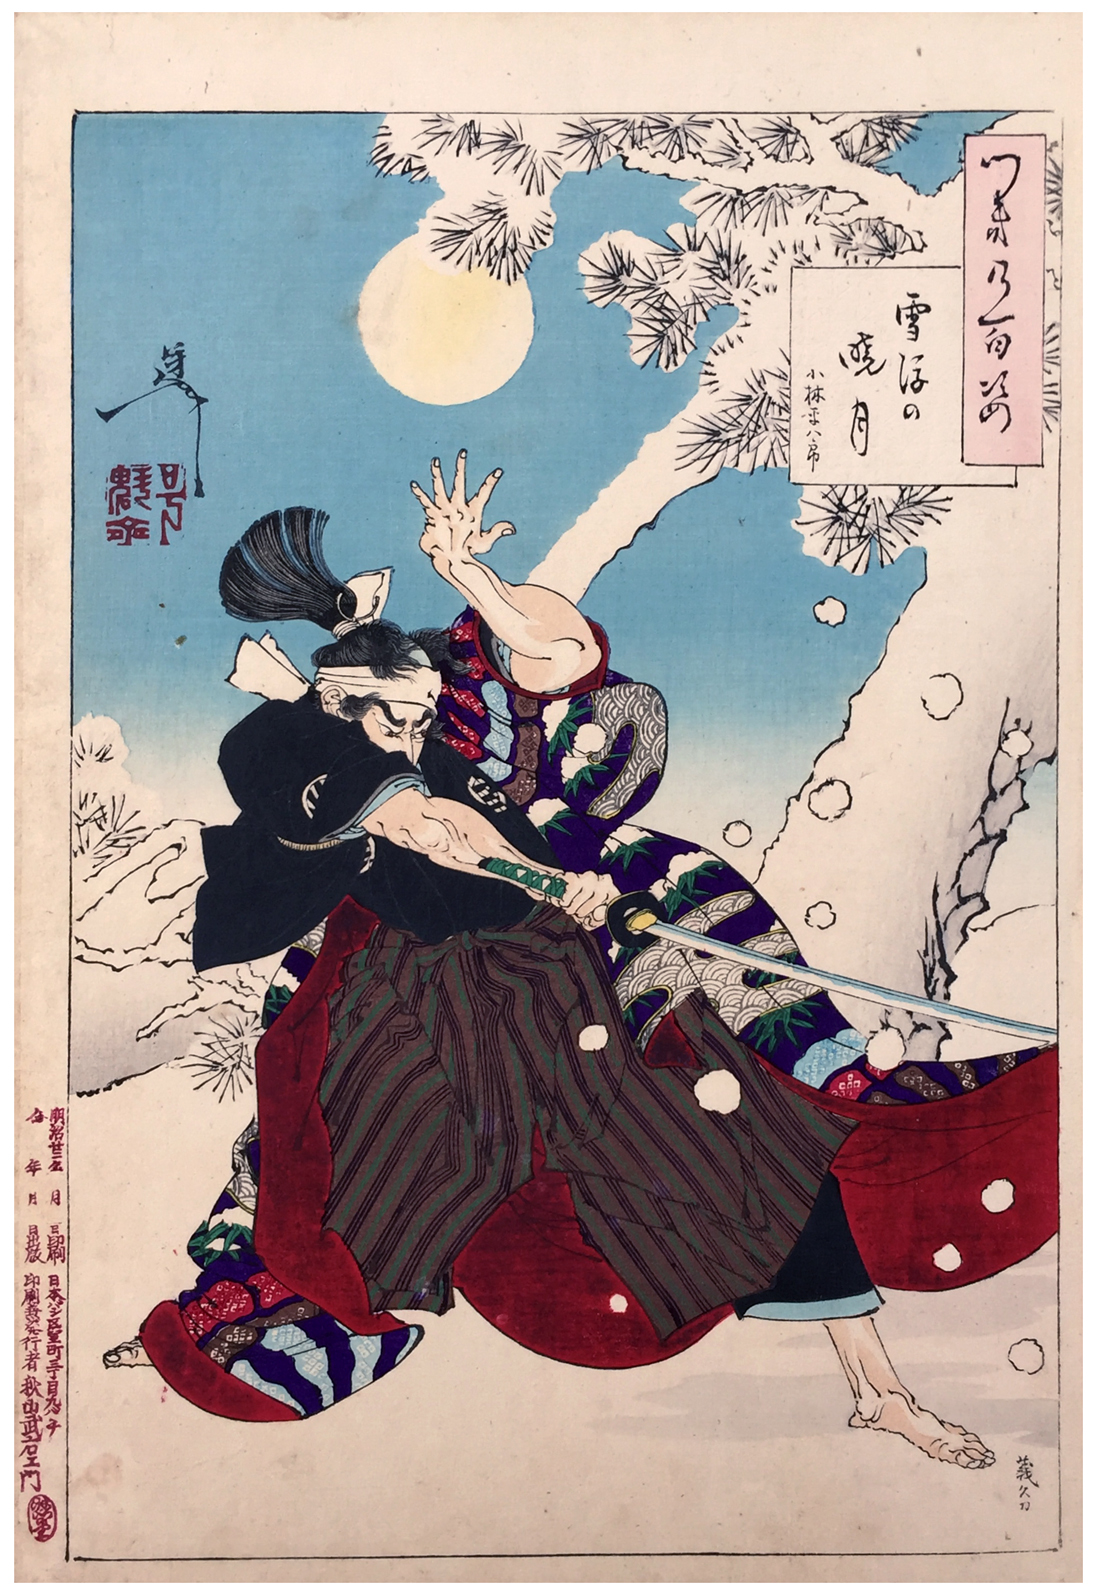 Seppu no Gyogetsu (Luna zorilor și zăpada care se prăbușește) by Tsukioka Yoshitoshi - 1889 